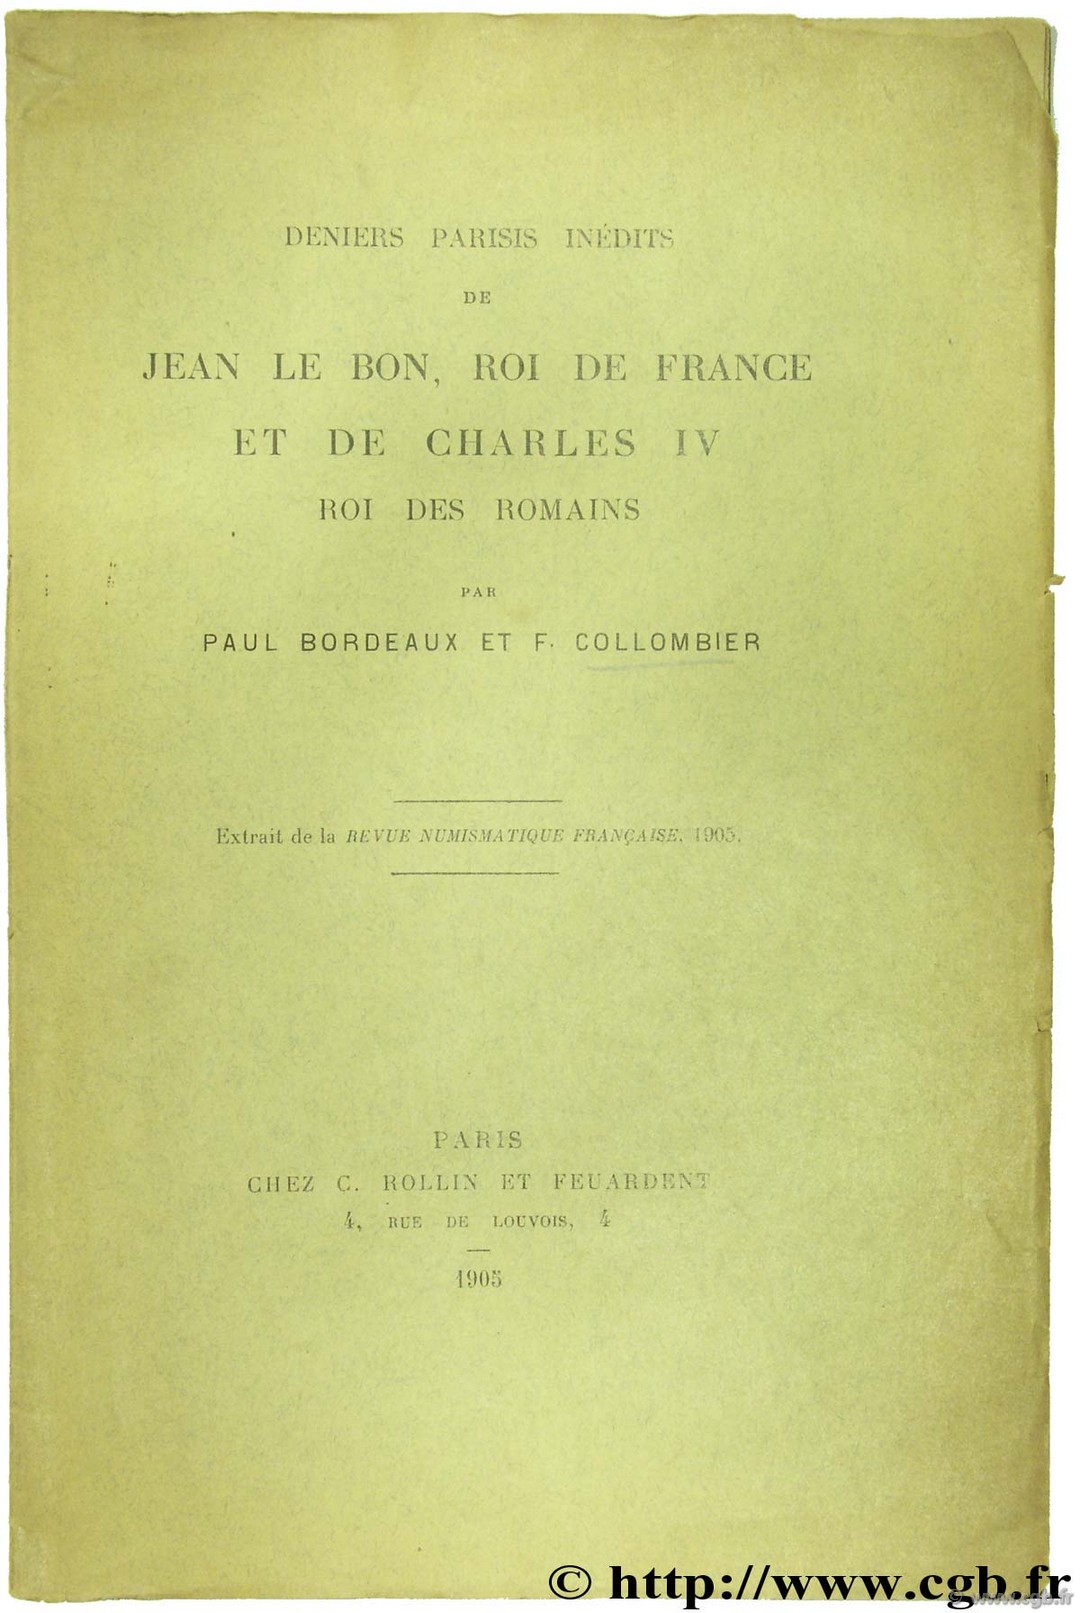 Deniers parisis inédit de Jean le Bon, Roi de France et de Charles IV Roi des romains BORDEAUX  P., COLLOMBIER F.